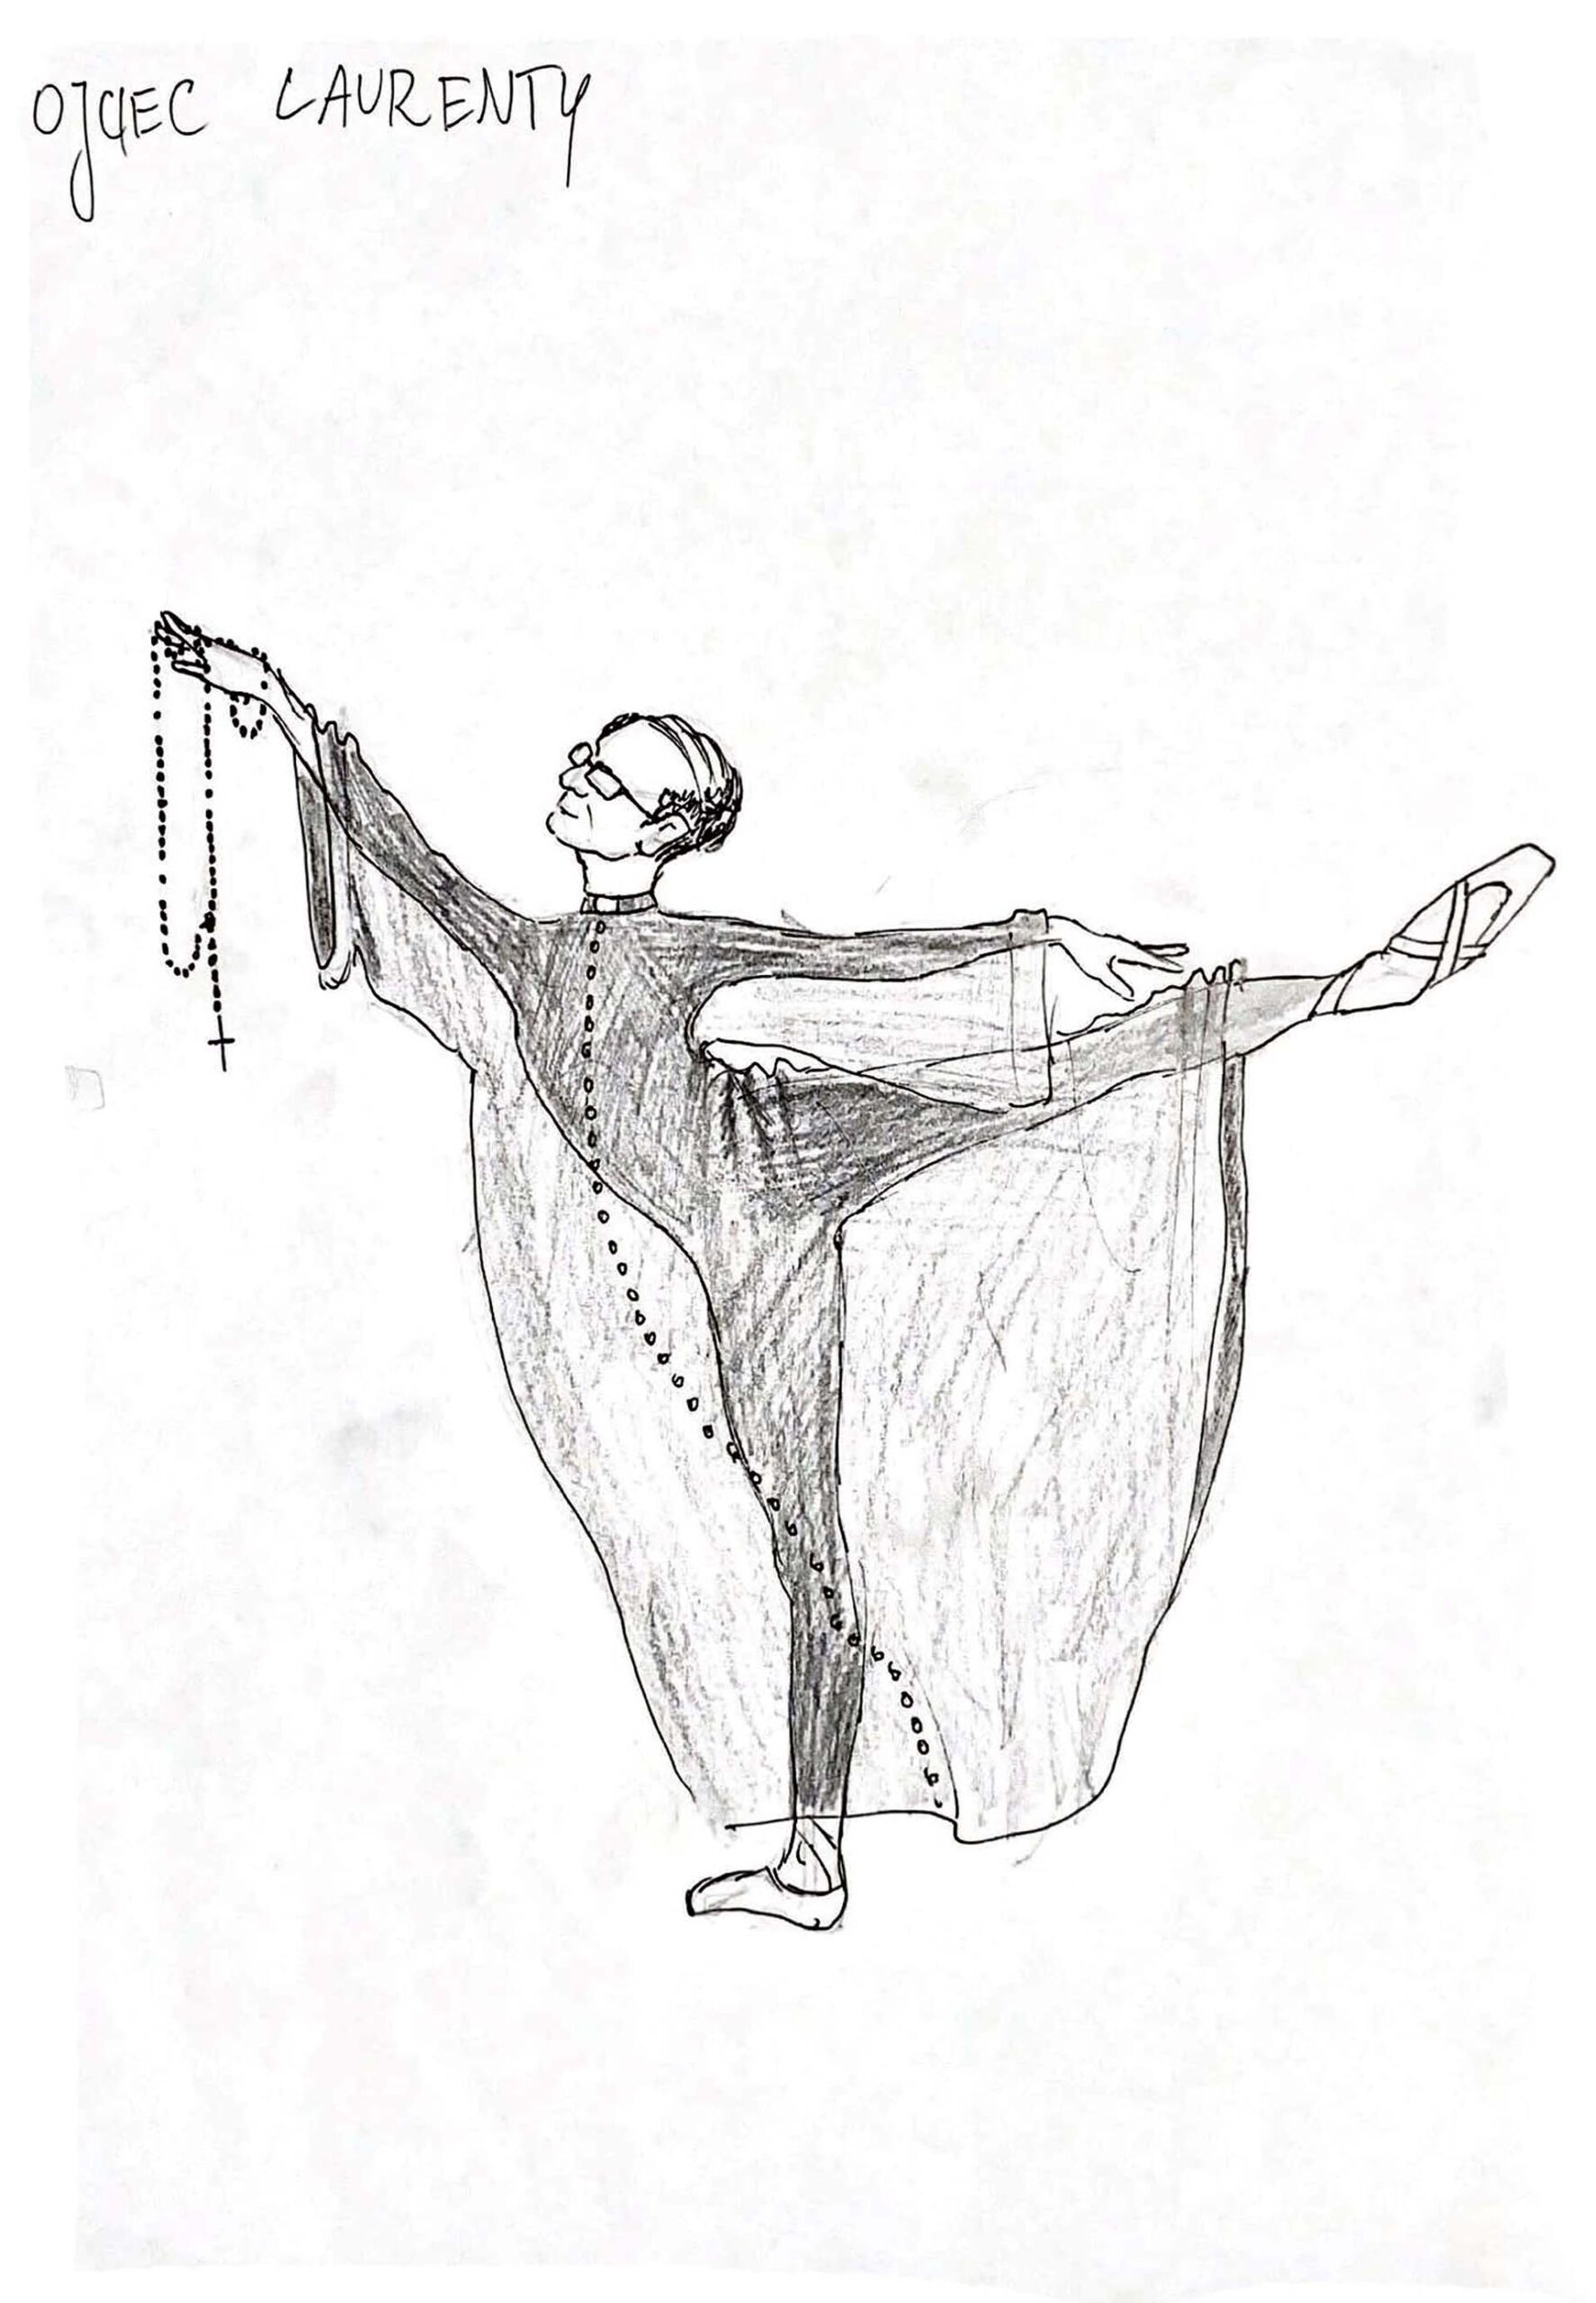 Rysunek mężczyzny w okularach i przerzedzonych włosach w pozycji baletowej. Ubrany w obszerną przezroczystą sutannę, czarny trykot i pointy. W dłoni trzyma różaniec.